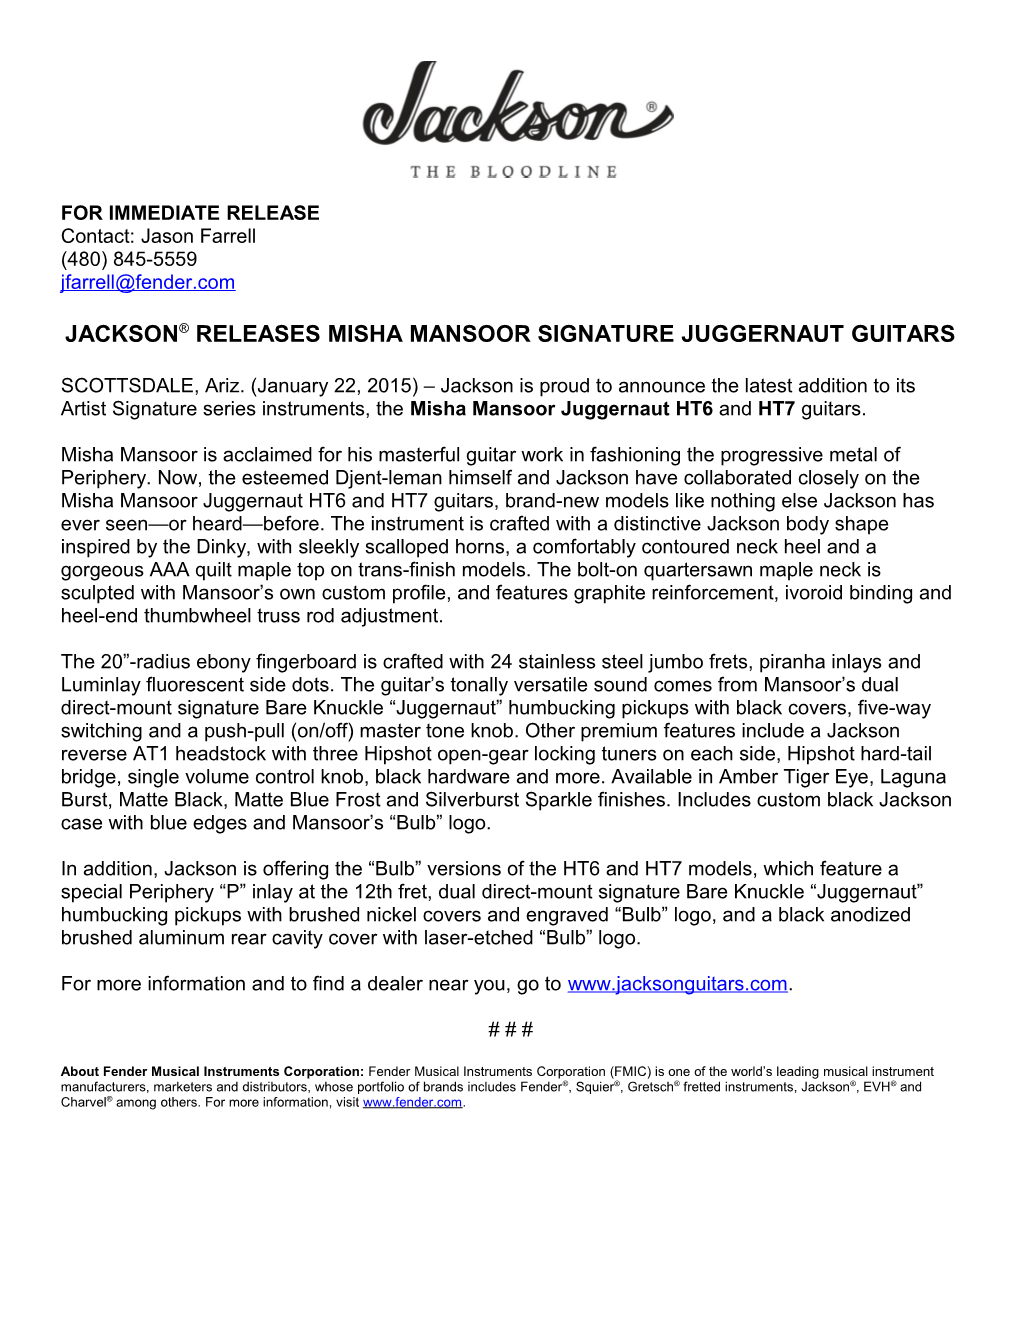 Jackson Releases Misha Mansoor Signature Juggernaut Guitars